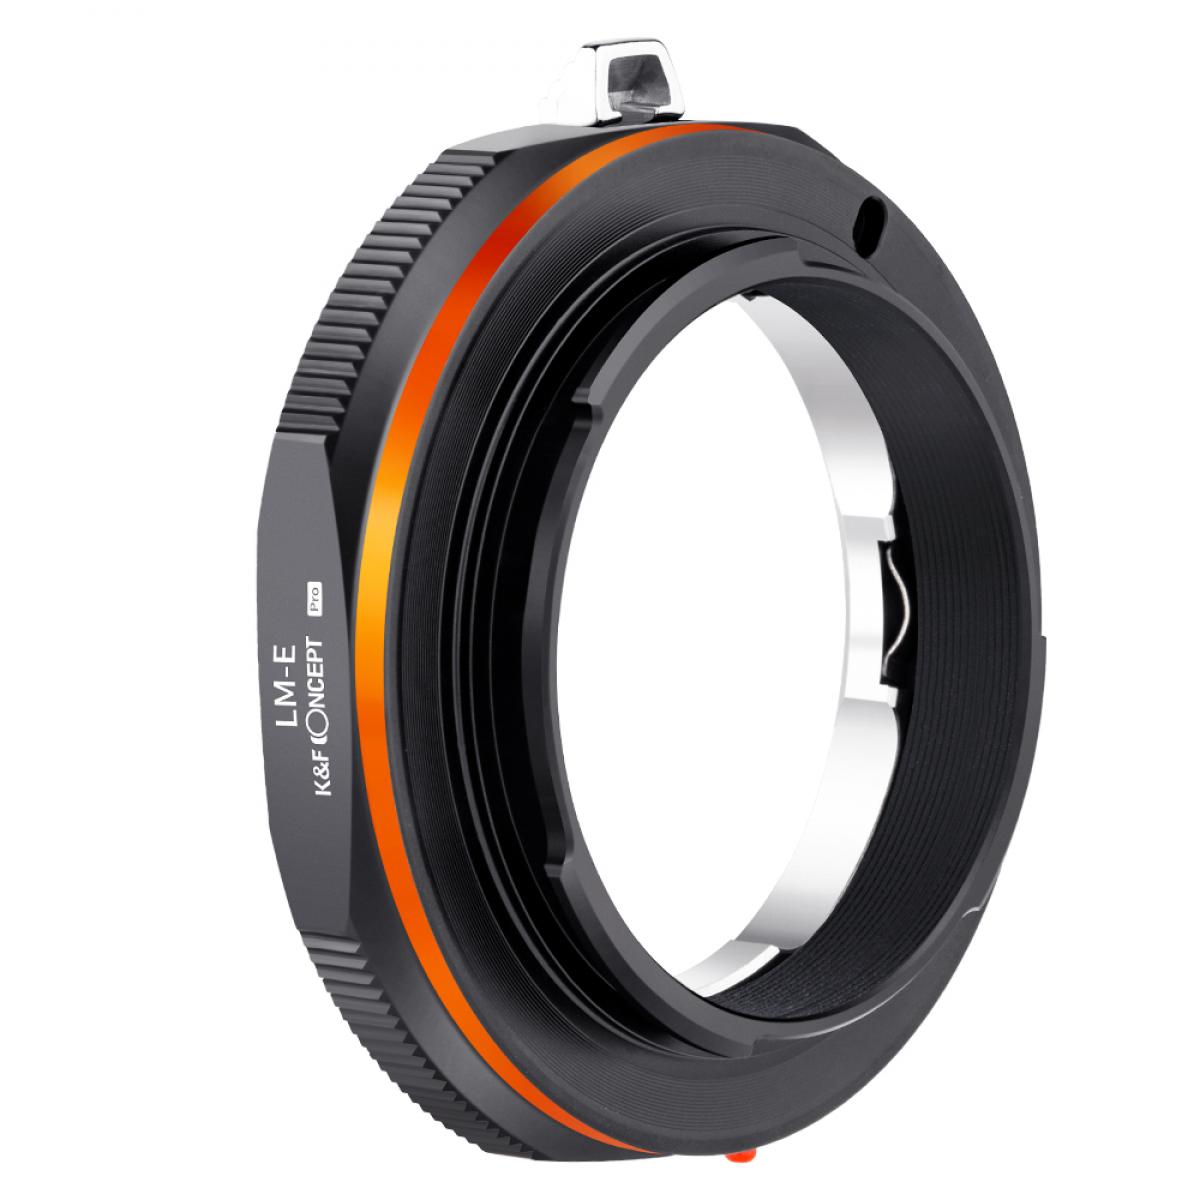 マウントアダプター Leica Mマウントレンズ- Sony Nex Eマウントカメラ装着 PROⅡ - K&F Concept